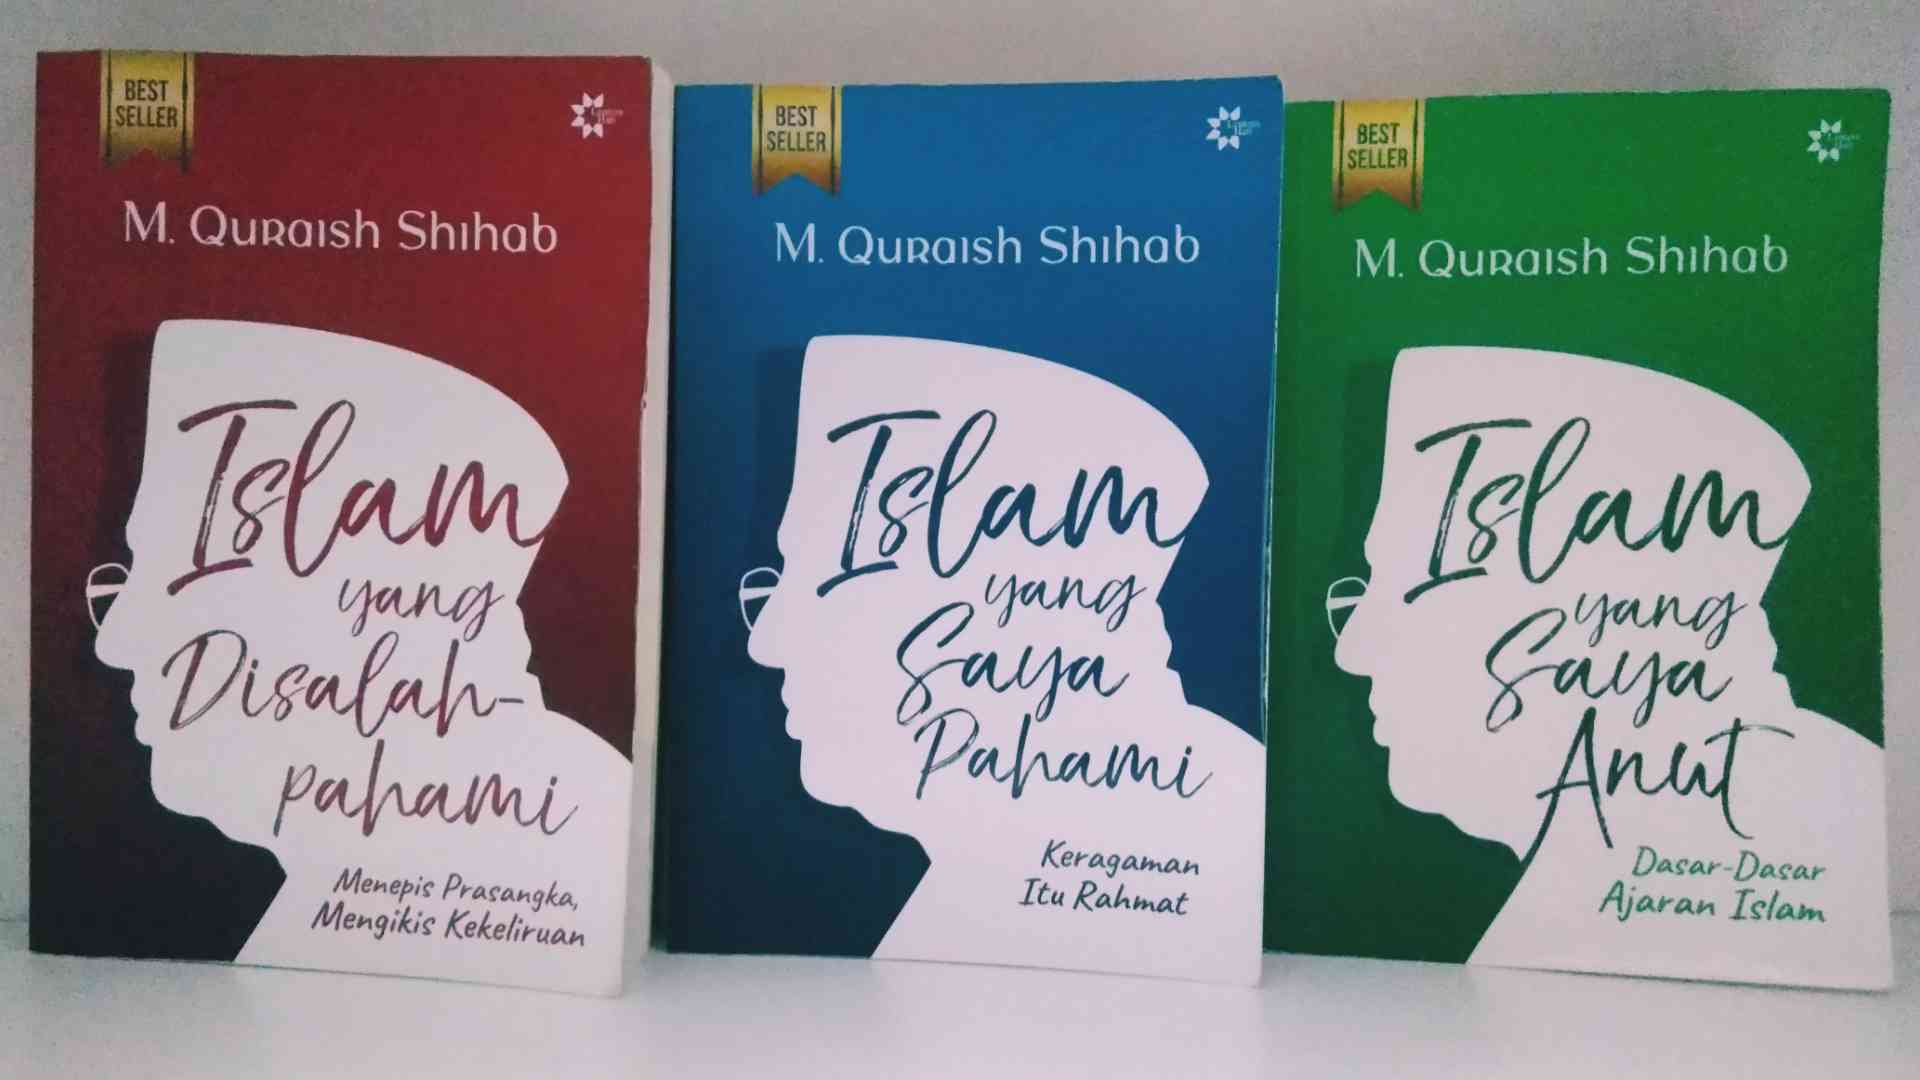 Ramadan Bersama 3 Buku Best Seller Prof. Quraish Shihab